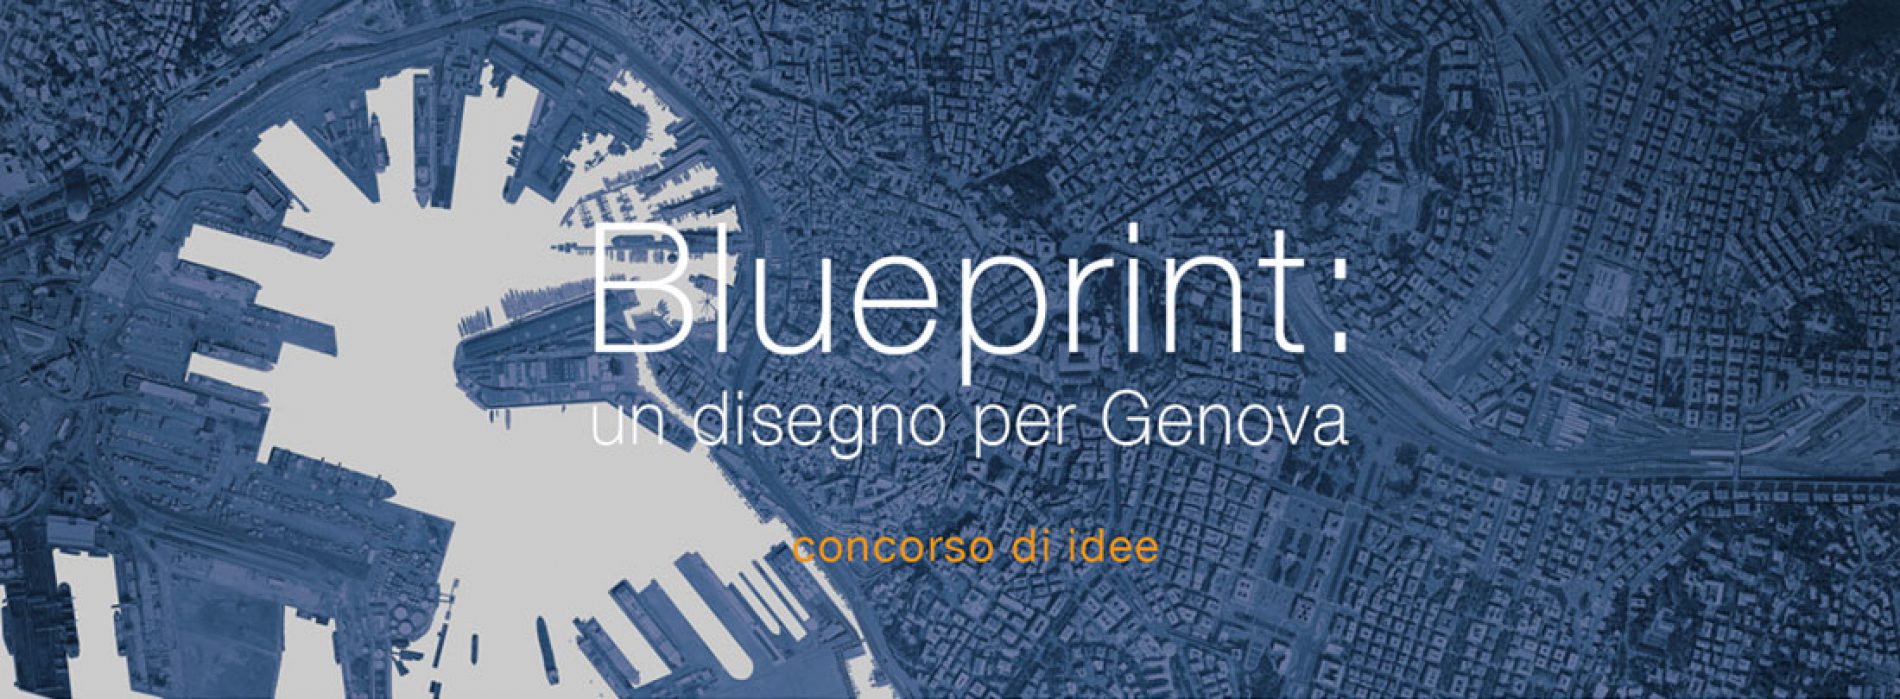 Blueprint Competition: un disegno per Genova